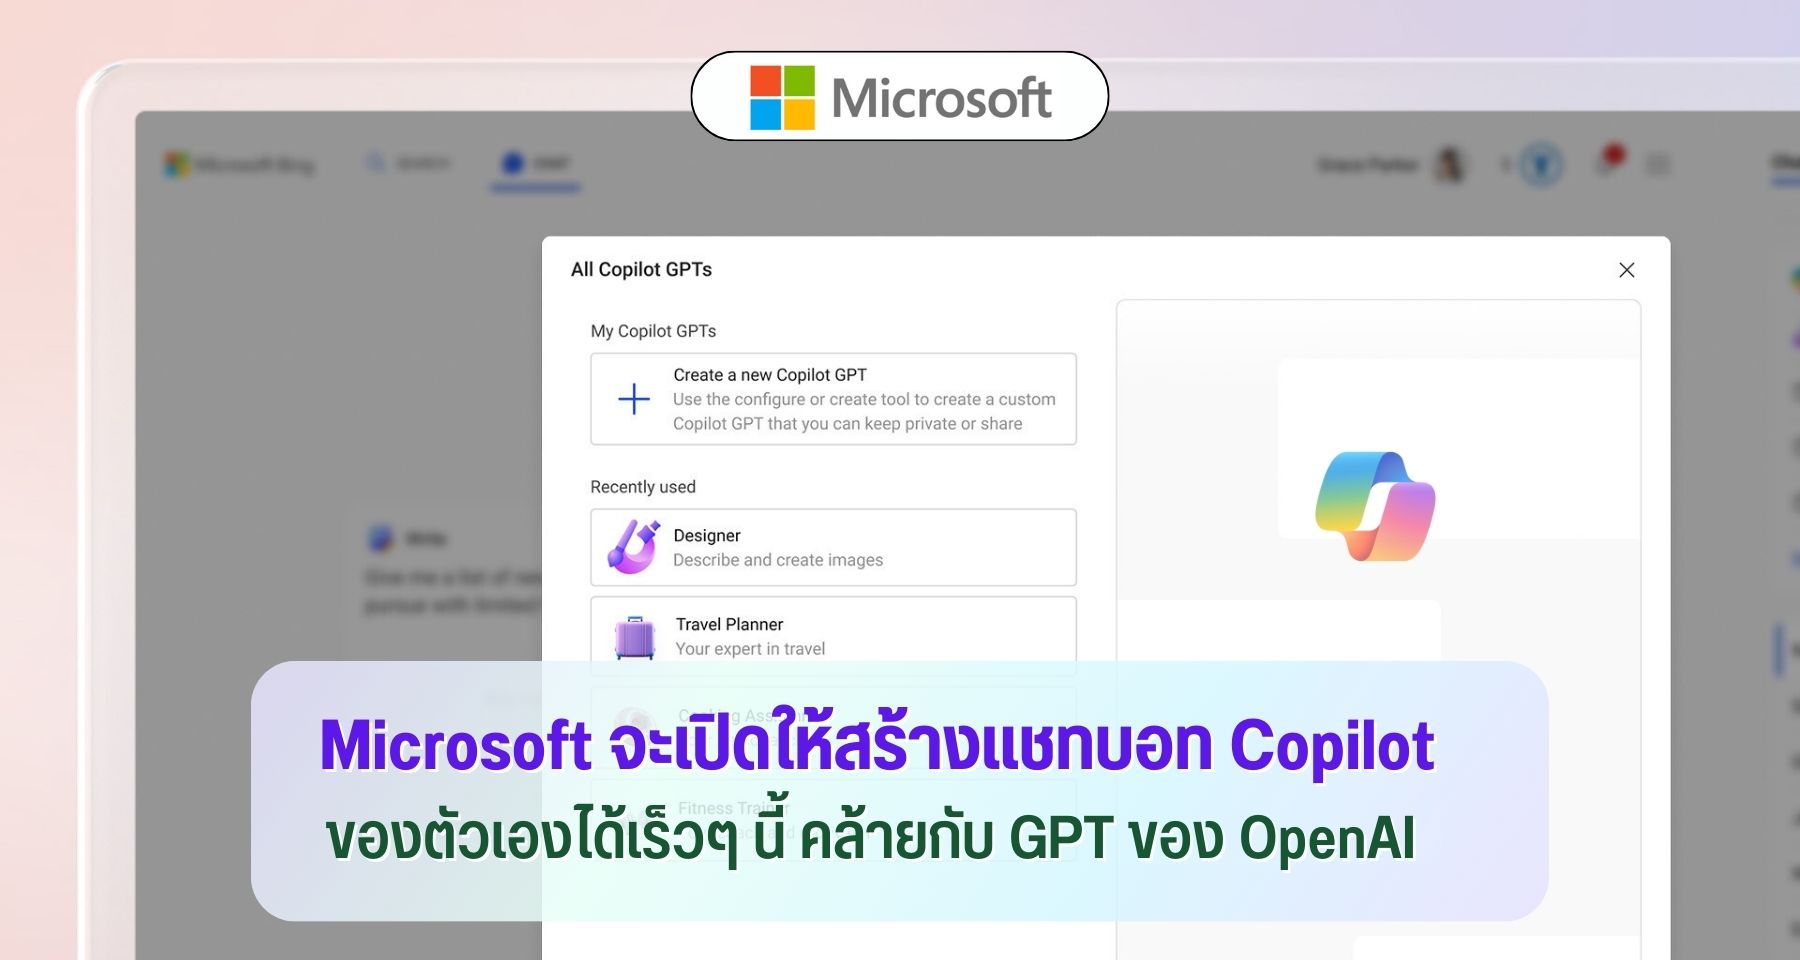 Microsoft จะเปิดให้สร้างแชทบอท Copilot ของตัวเองได้เร็วๆ นี้ คล้ายกับ GPT ของ OpenAI